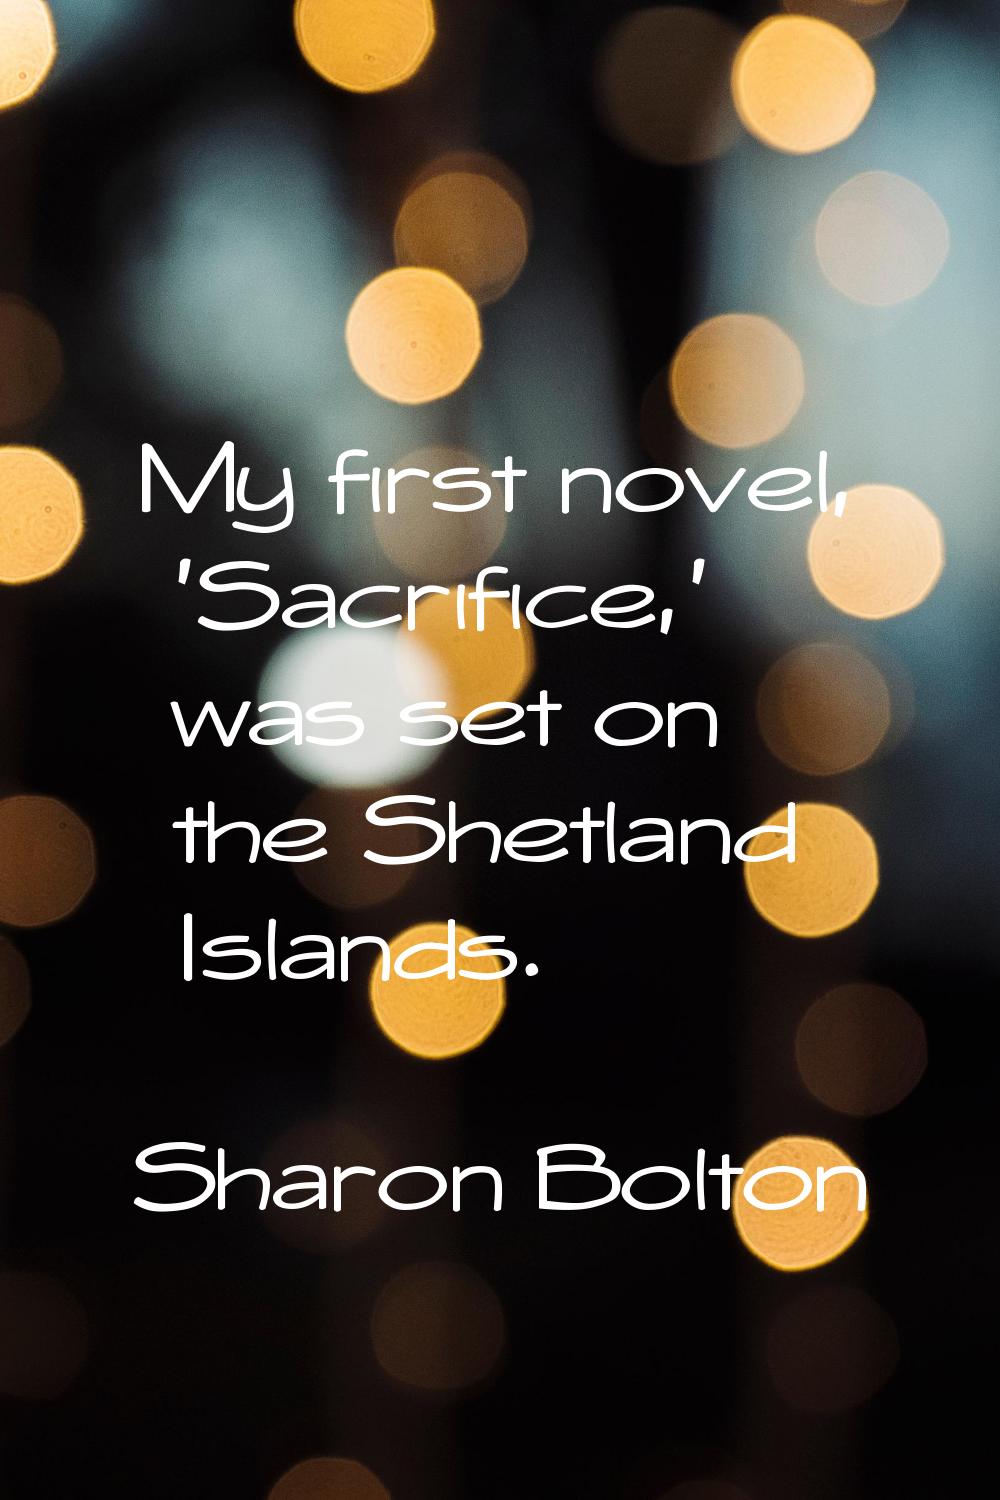 My first novel, 'Sacrifice,' was set on the Shetland Islands.